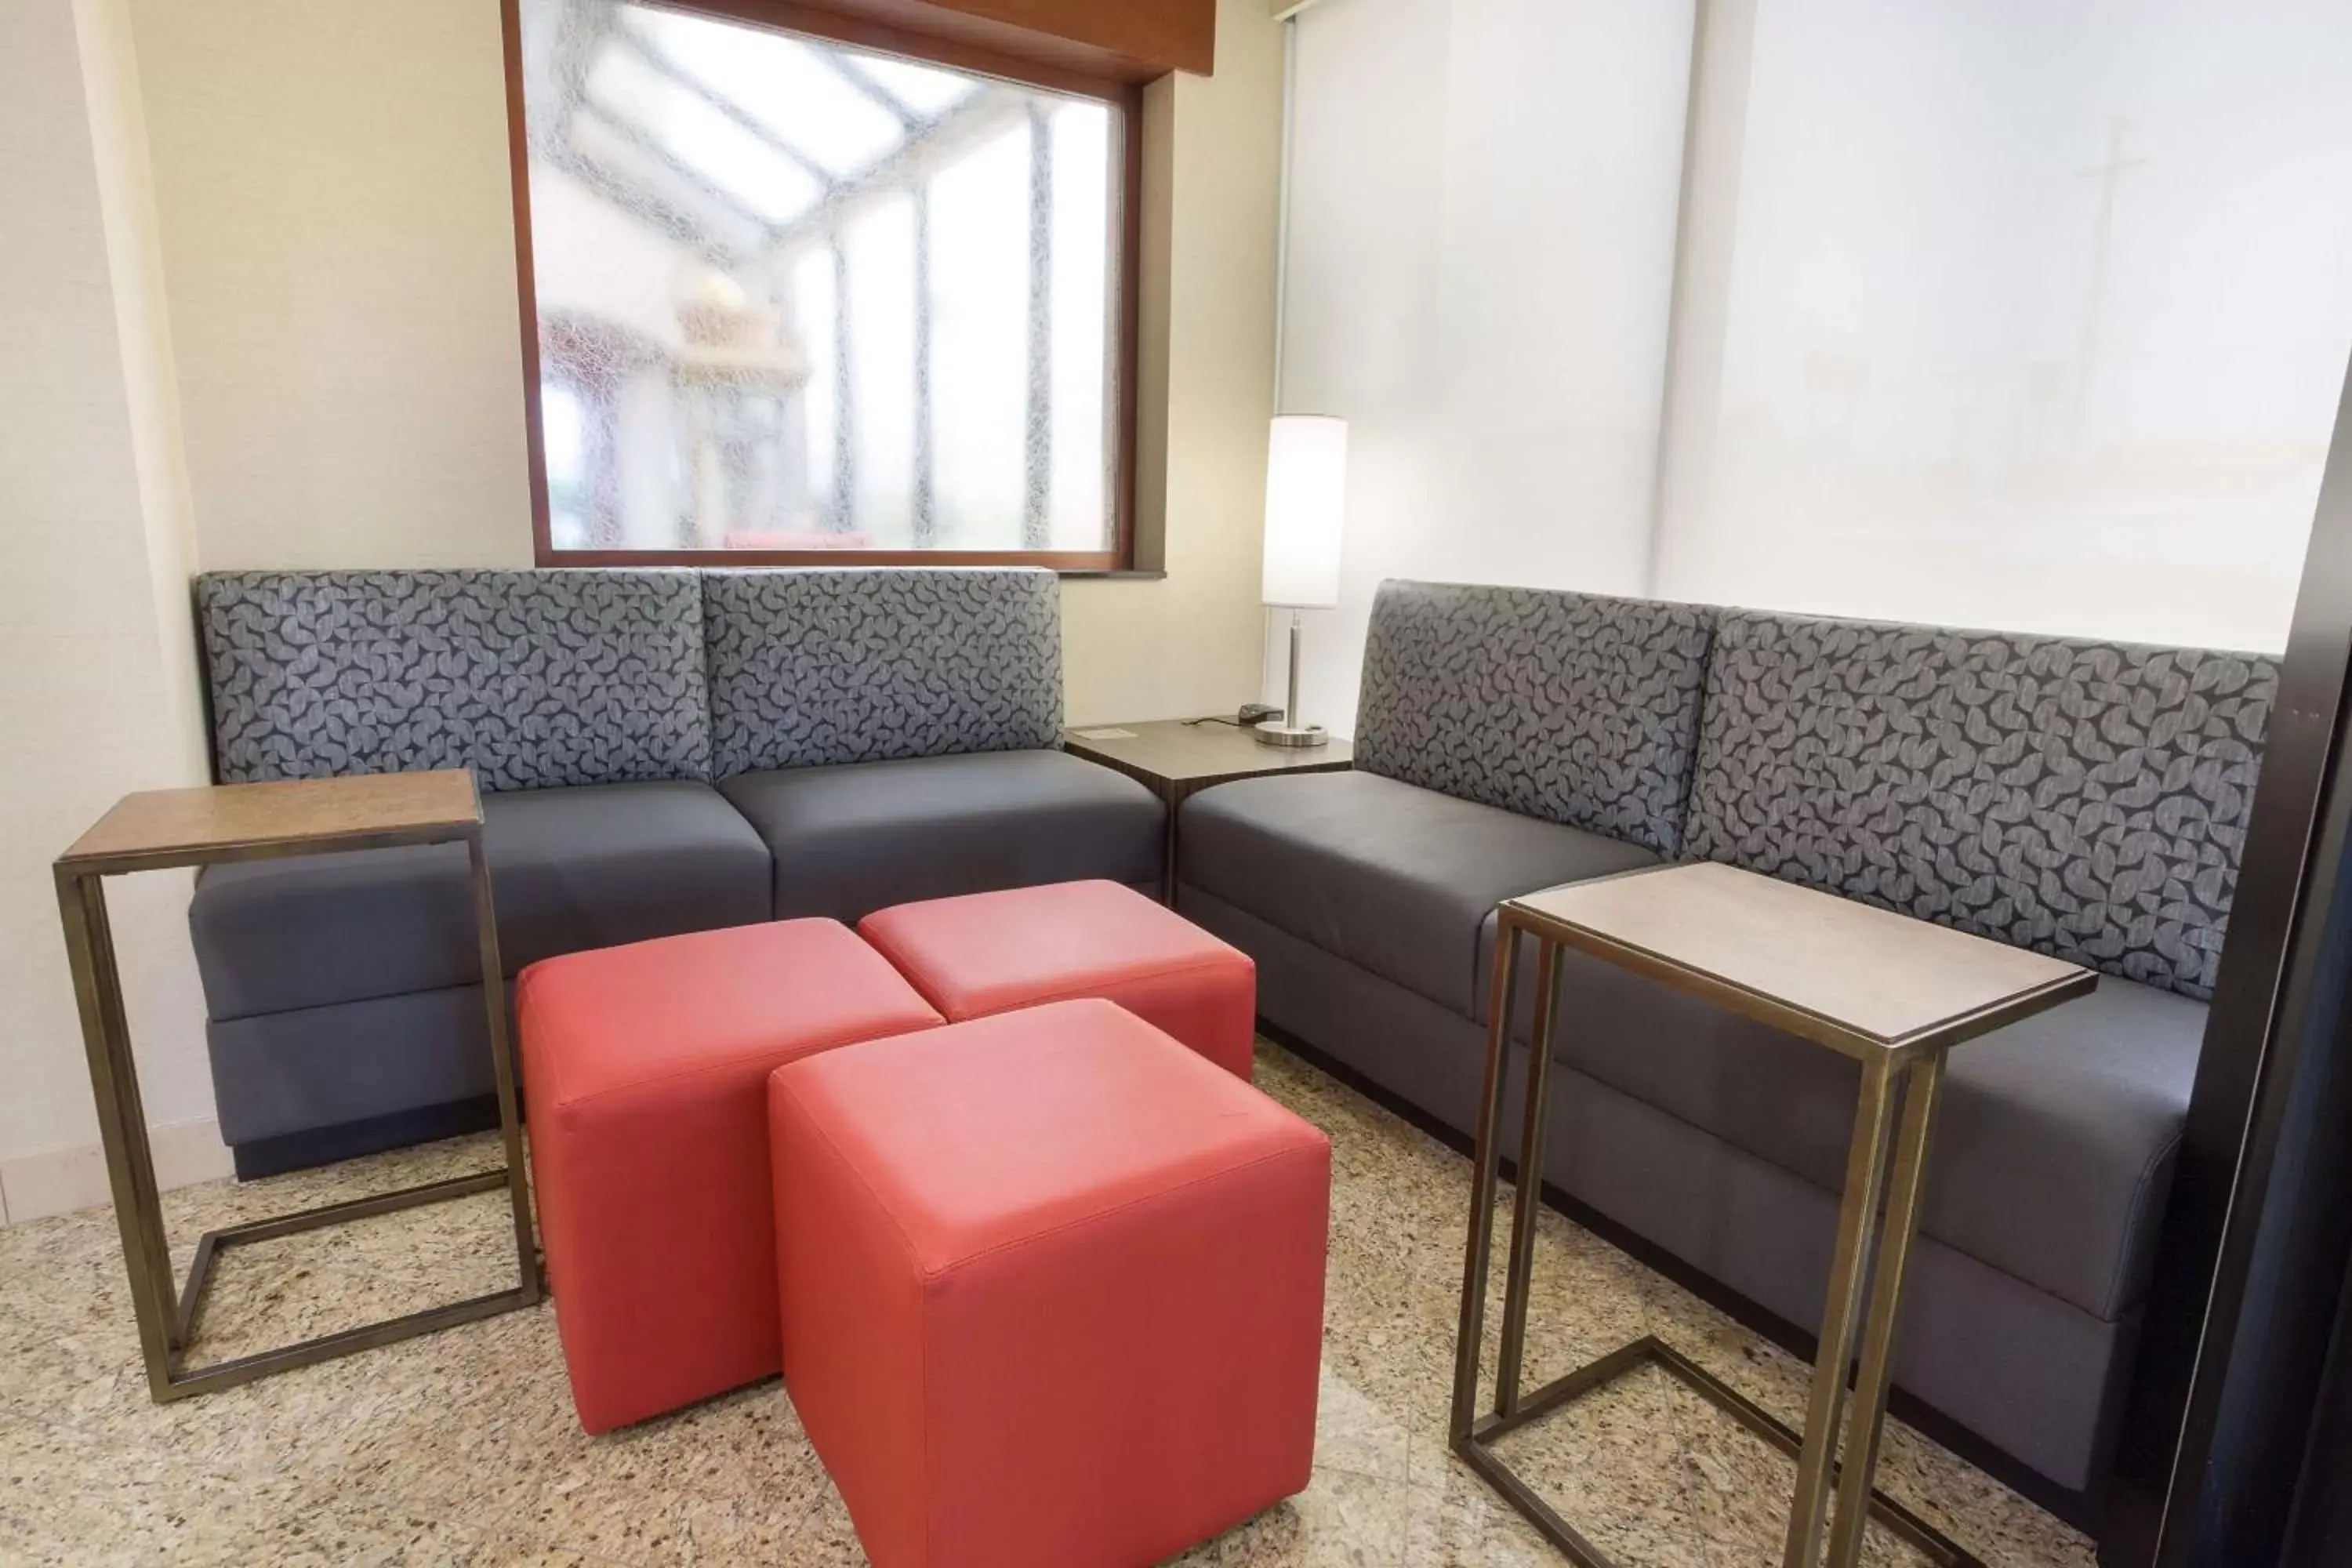 Lobby or reception, Seating Area in Drury Inn & Suites Joplin